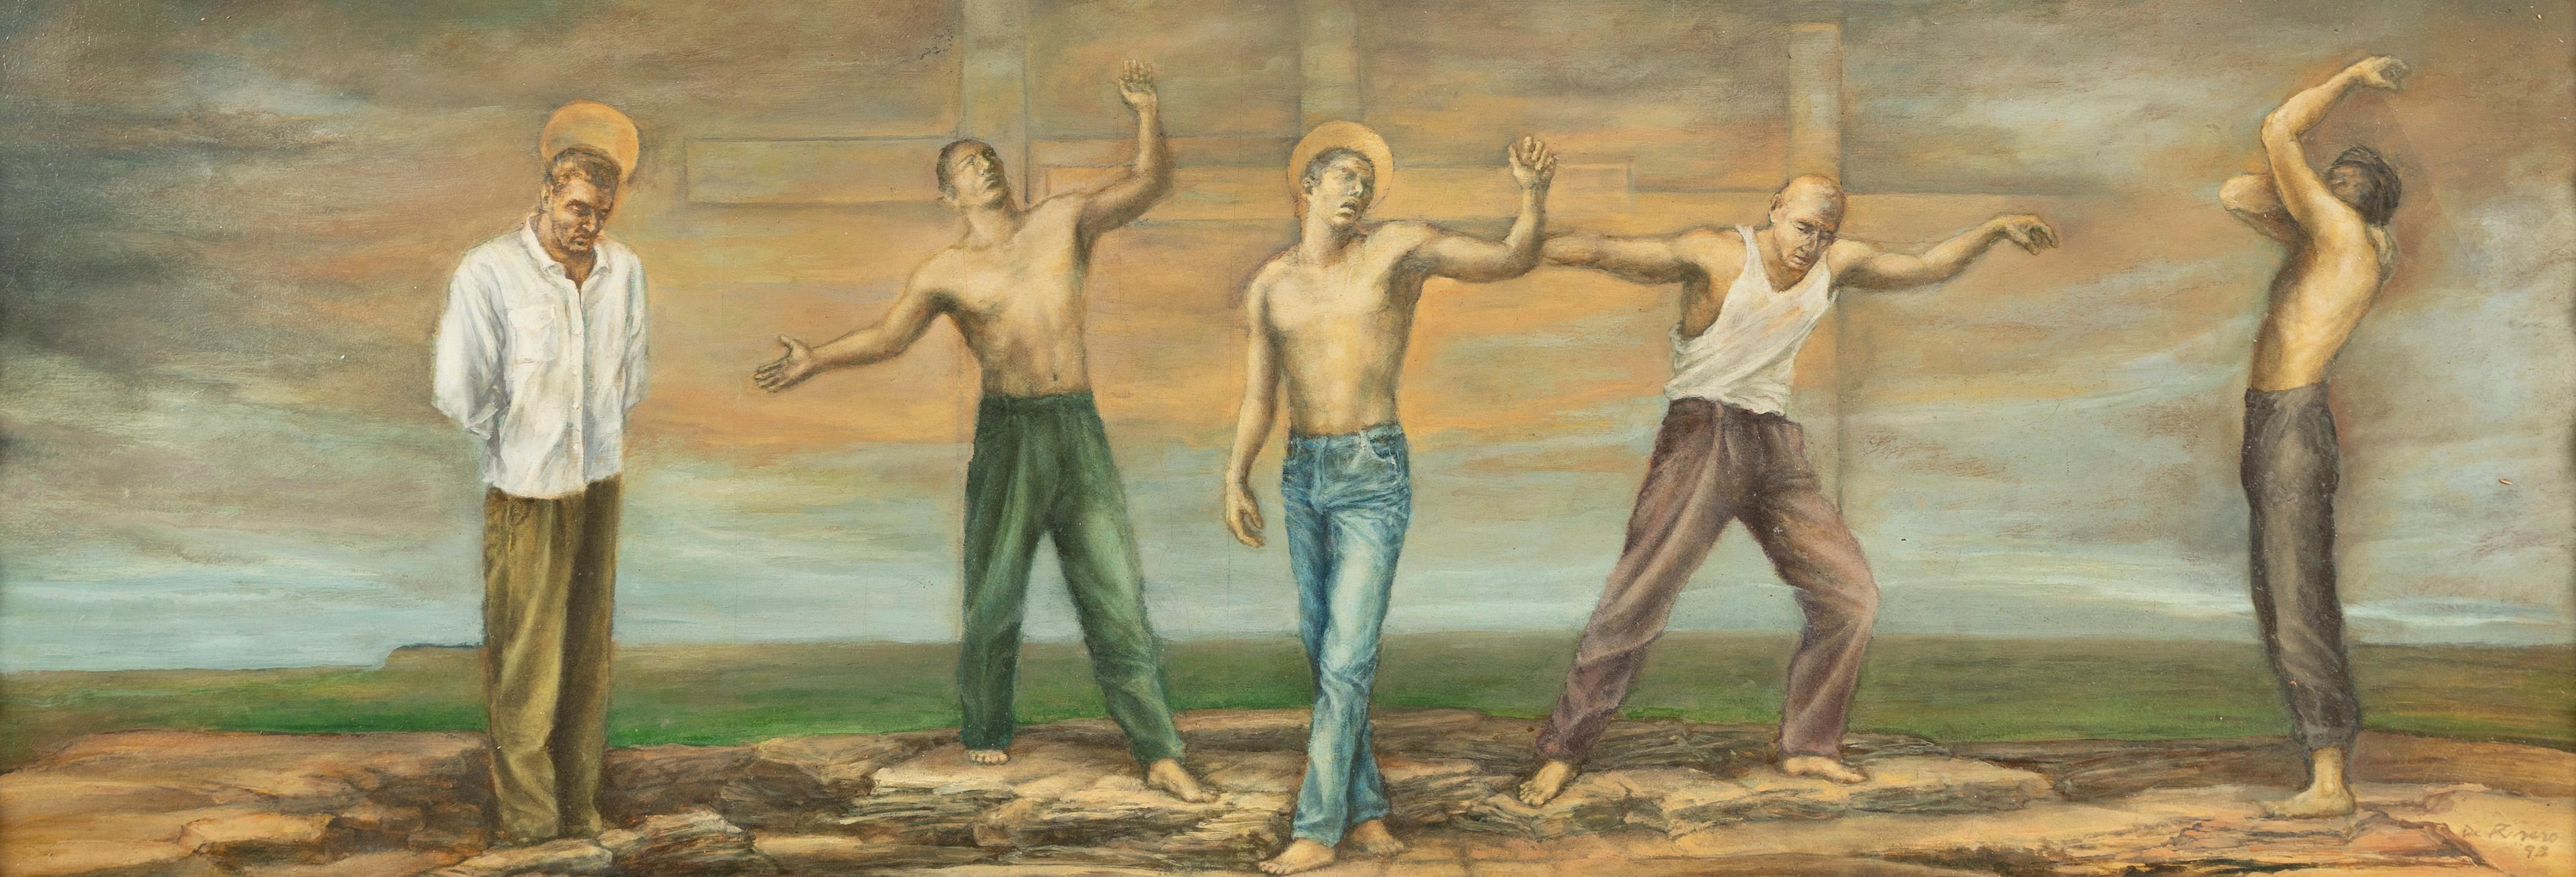 Großes signiertes surreales nacktes männliches Porträt, symbolistische Landschaft, gerahmtes Ölgemälde (Braun), Landscape Painting, von Unknown